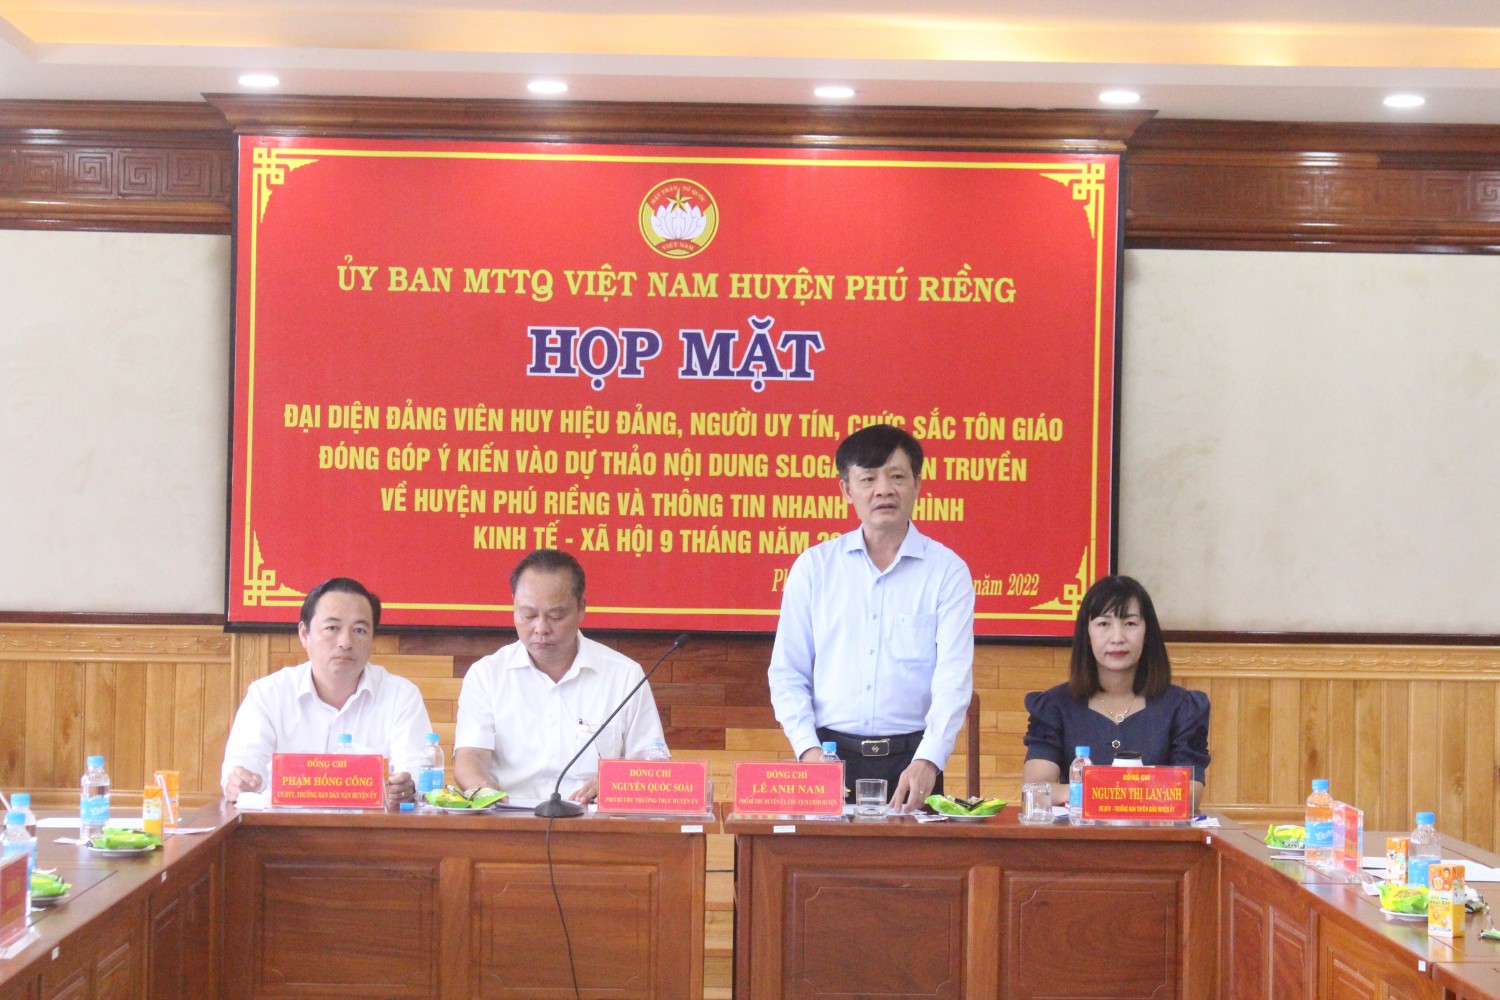 Phú Riềng: Đóng góp ý kiến dự thảo nội dung slogan tuyên truyền về huyện